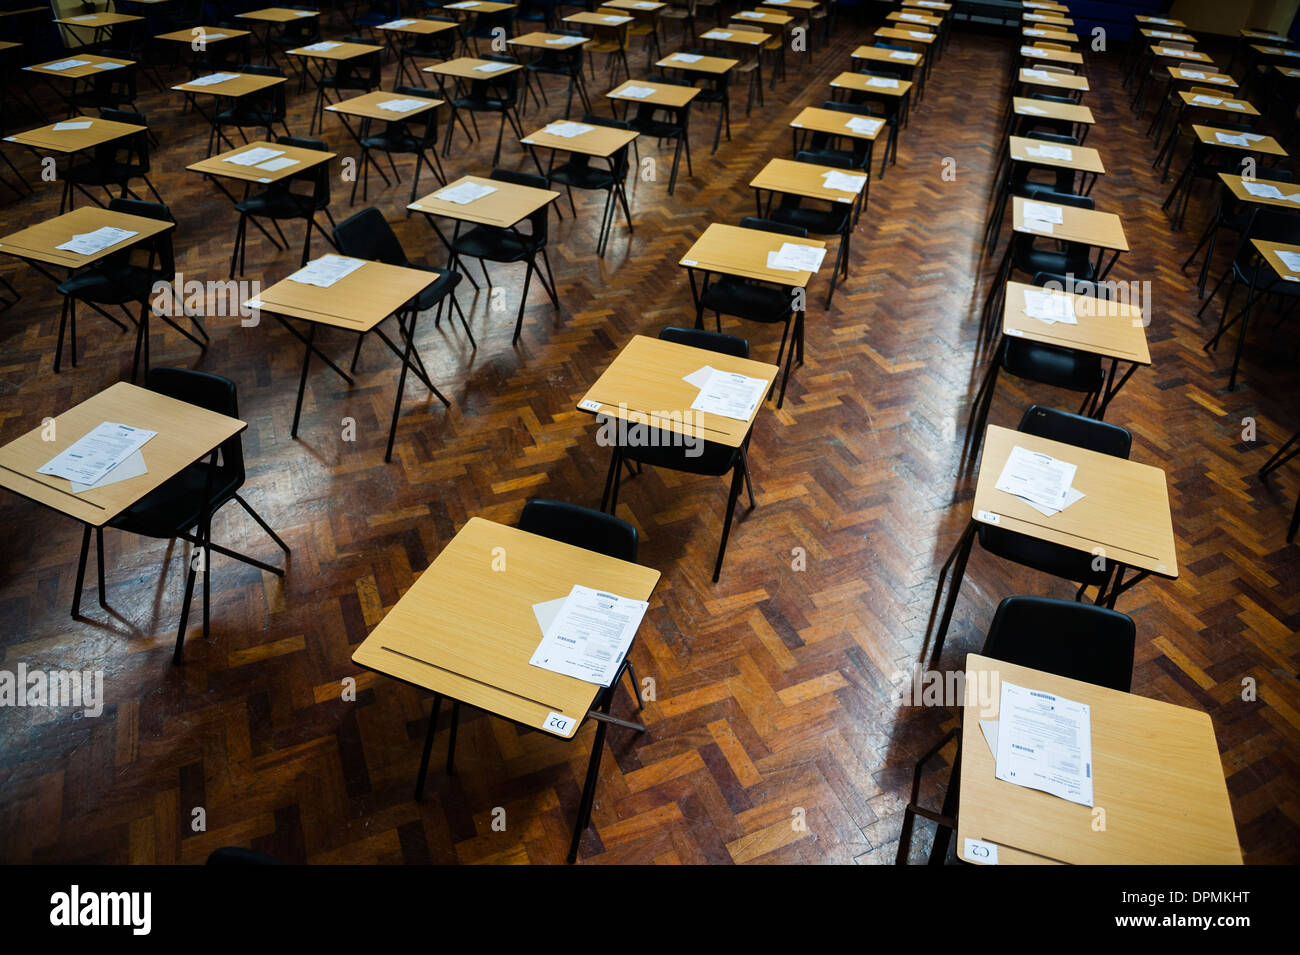 Des rangées de bureaux vides prêts pour les élèves de l'école GCSE gallois de s'asseoir leurs examens dans une salle d'école, le Pays de Galles UK Banque D'Images